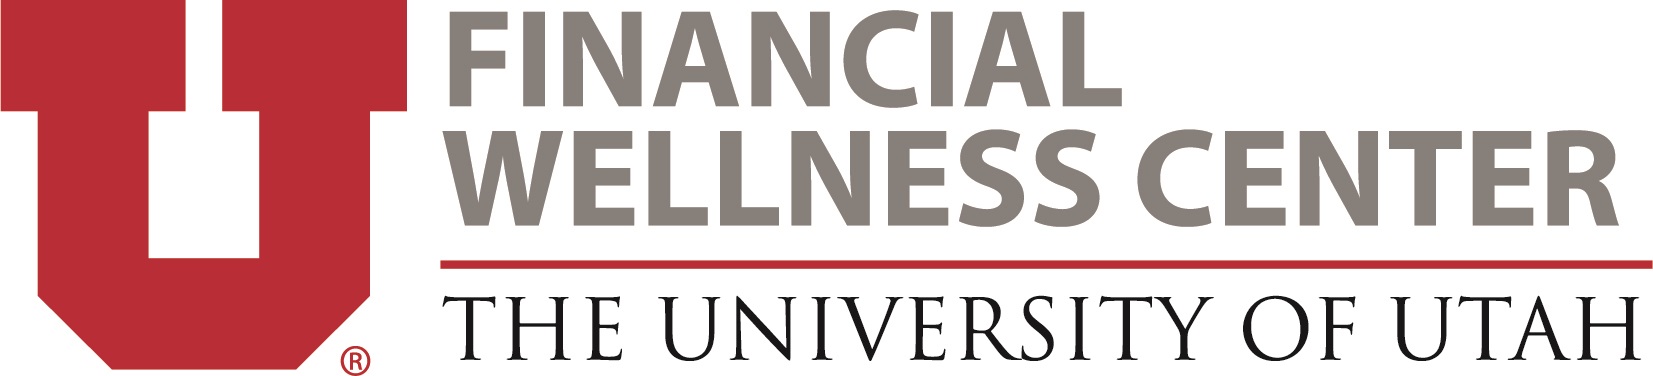 Financial wellness center logo